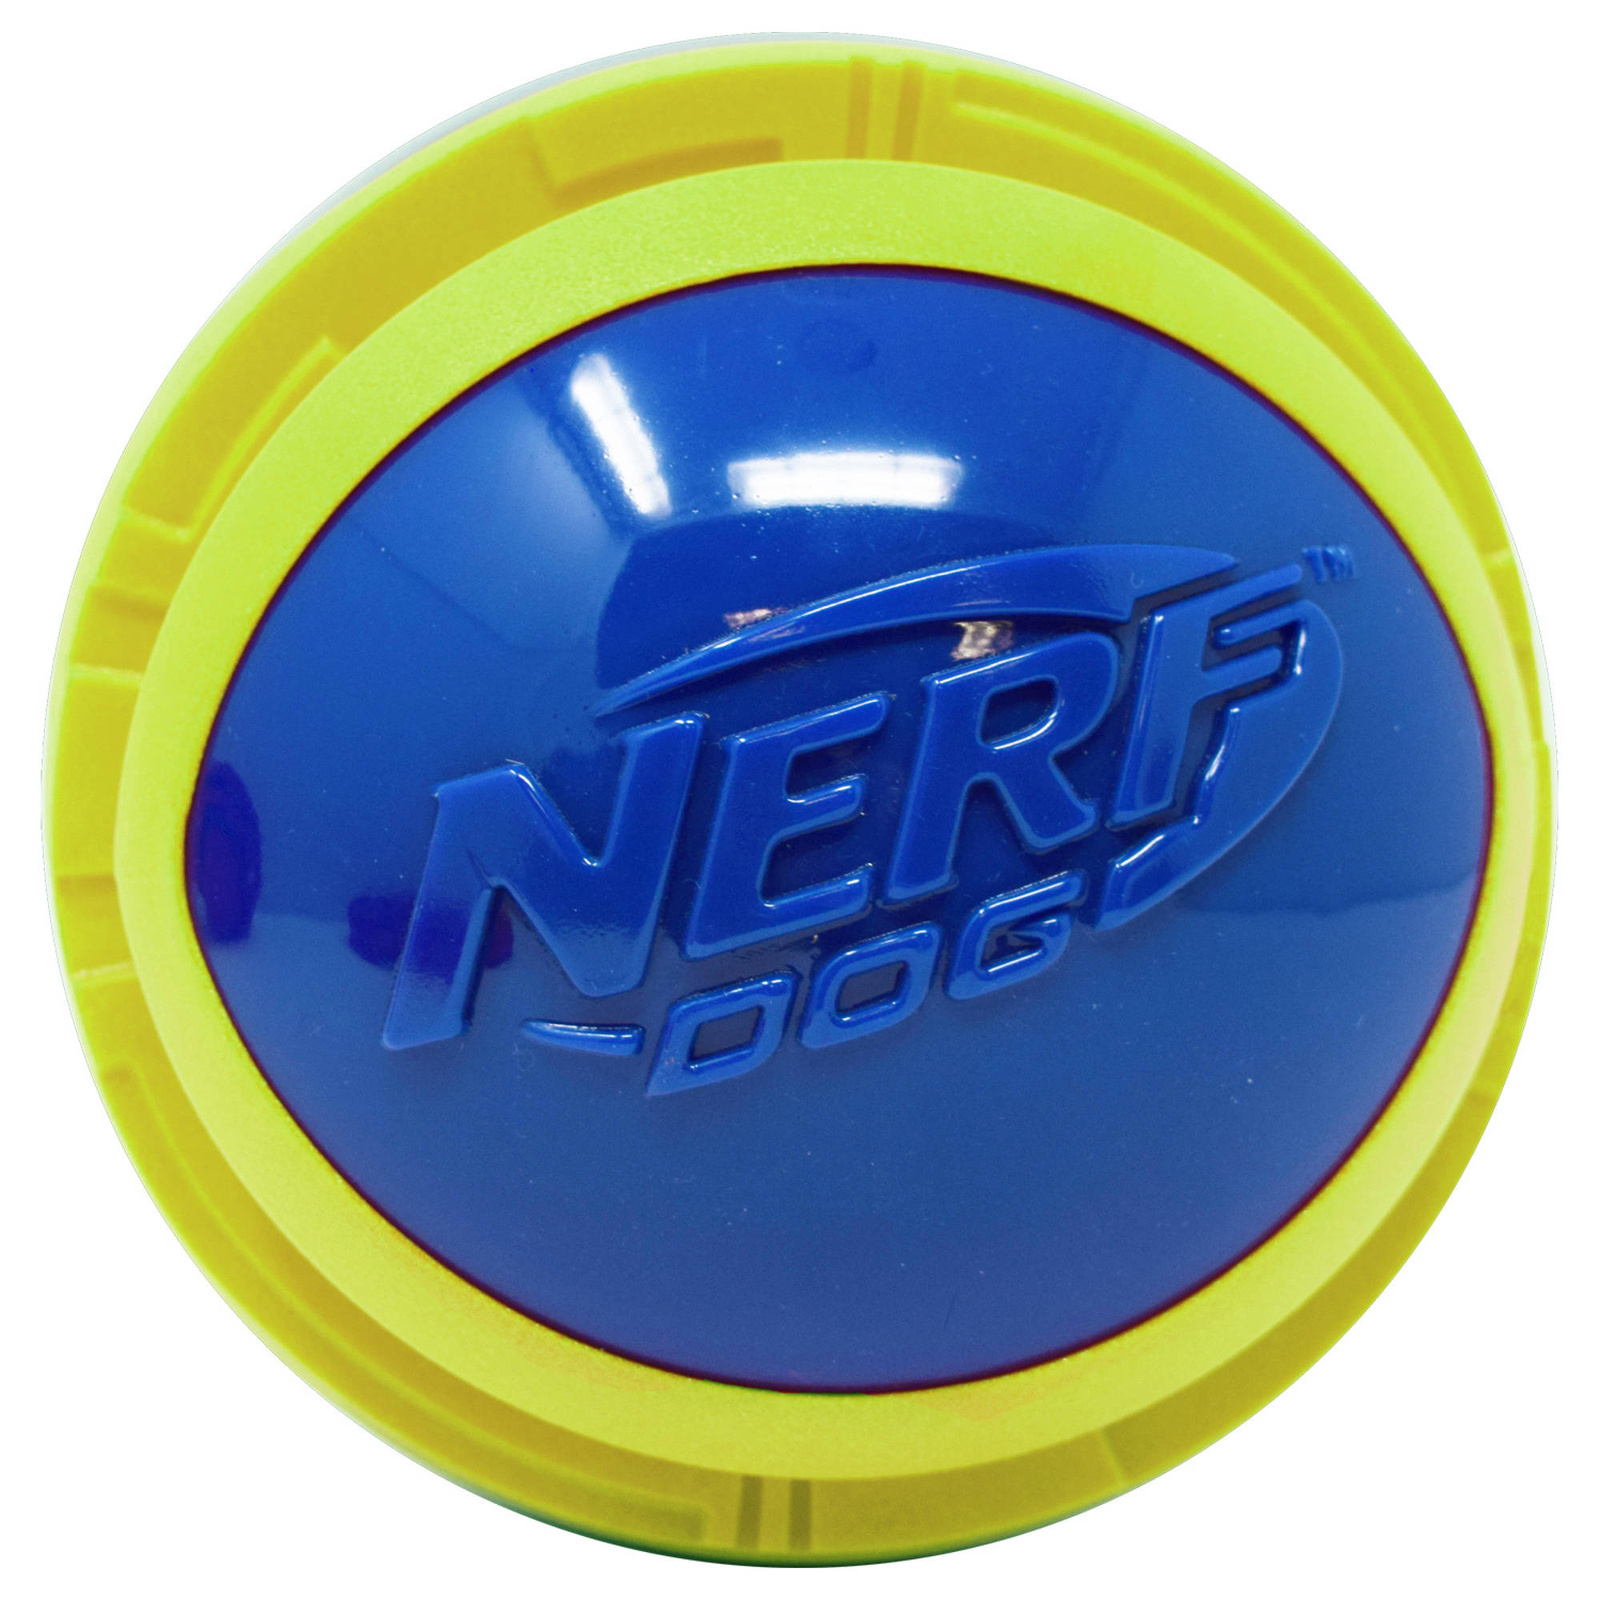 Nerf Nerf мяч из вспененной резины и термопластичной резины,14 см (серия Мегатон), (синий/зеленый) (390 г) nerf nerf мяч из вспененной резины и термопластичной резины 10 см серия мегатон синий оранжевый 380 г